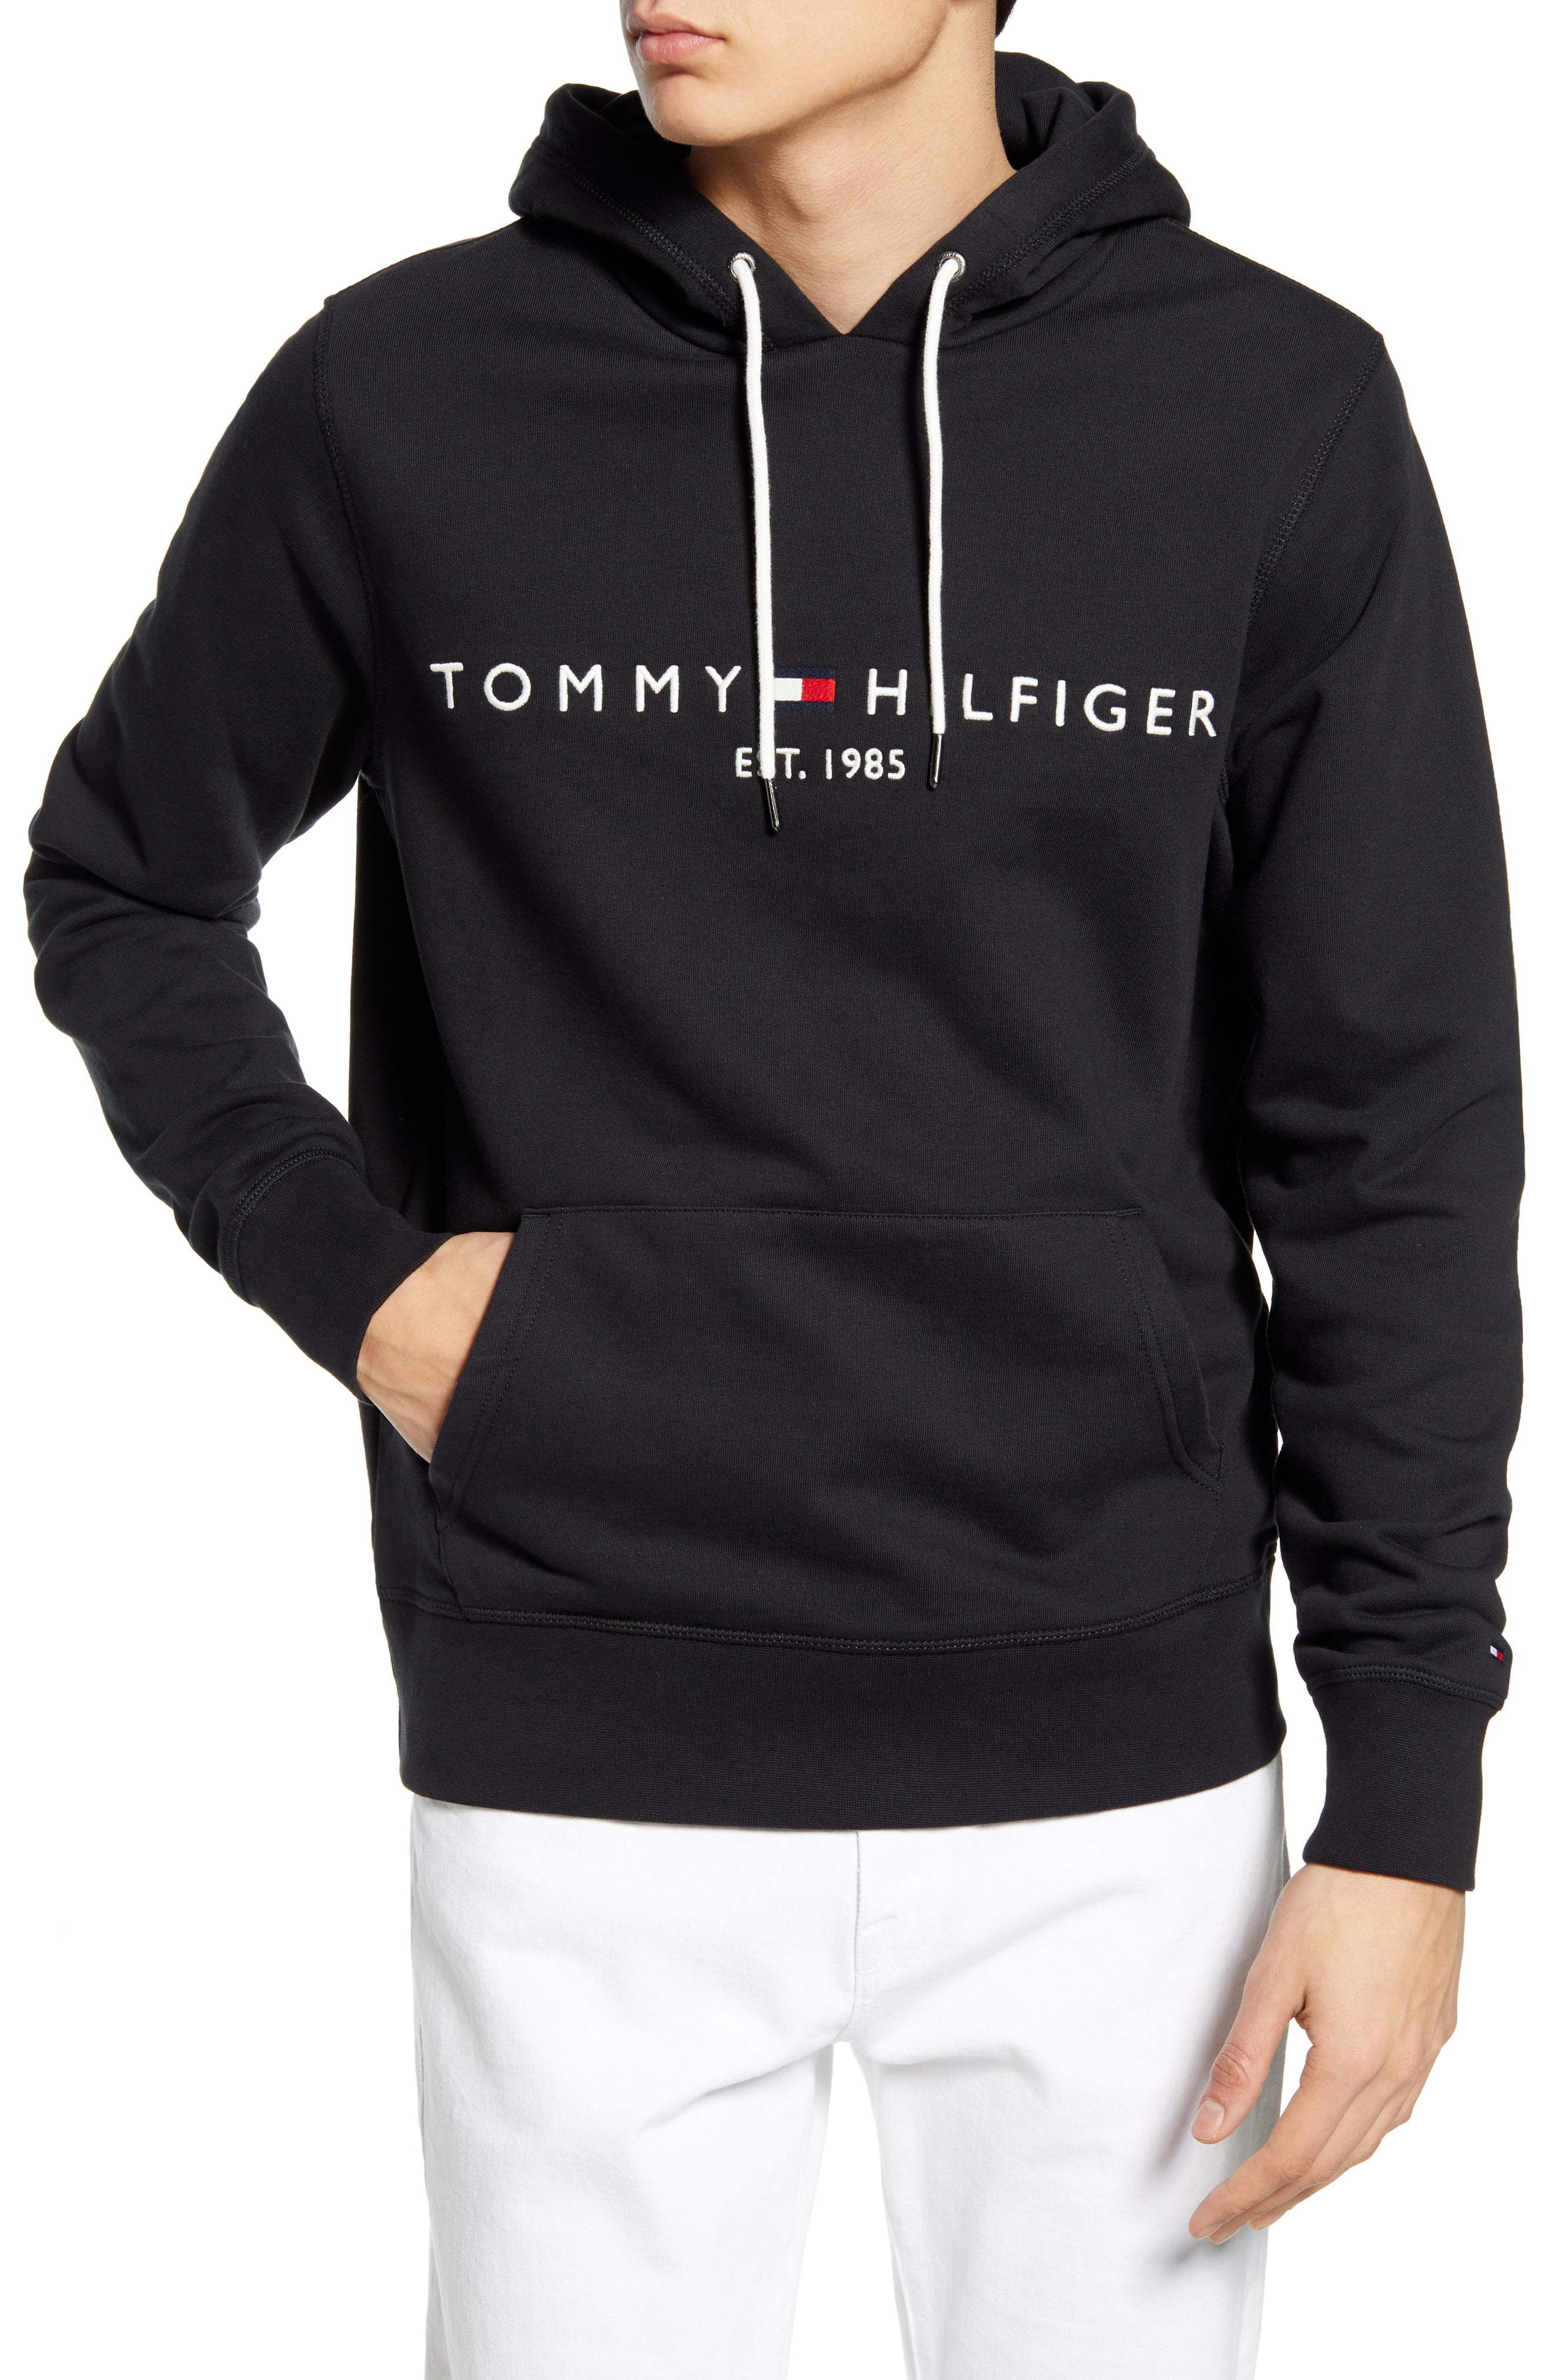 Tommy Hilfiger S Hooded Sweatshirt, $59 | Nordstrom | Lookastic